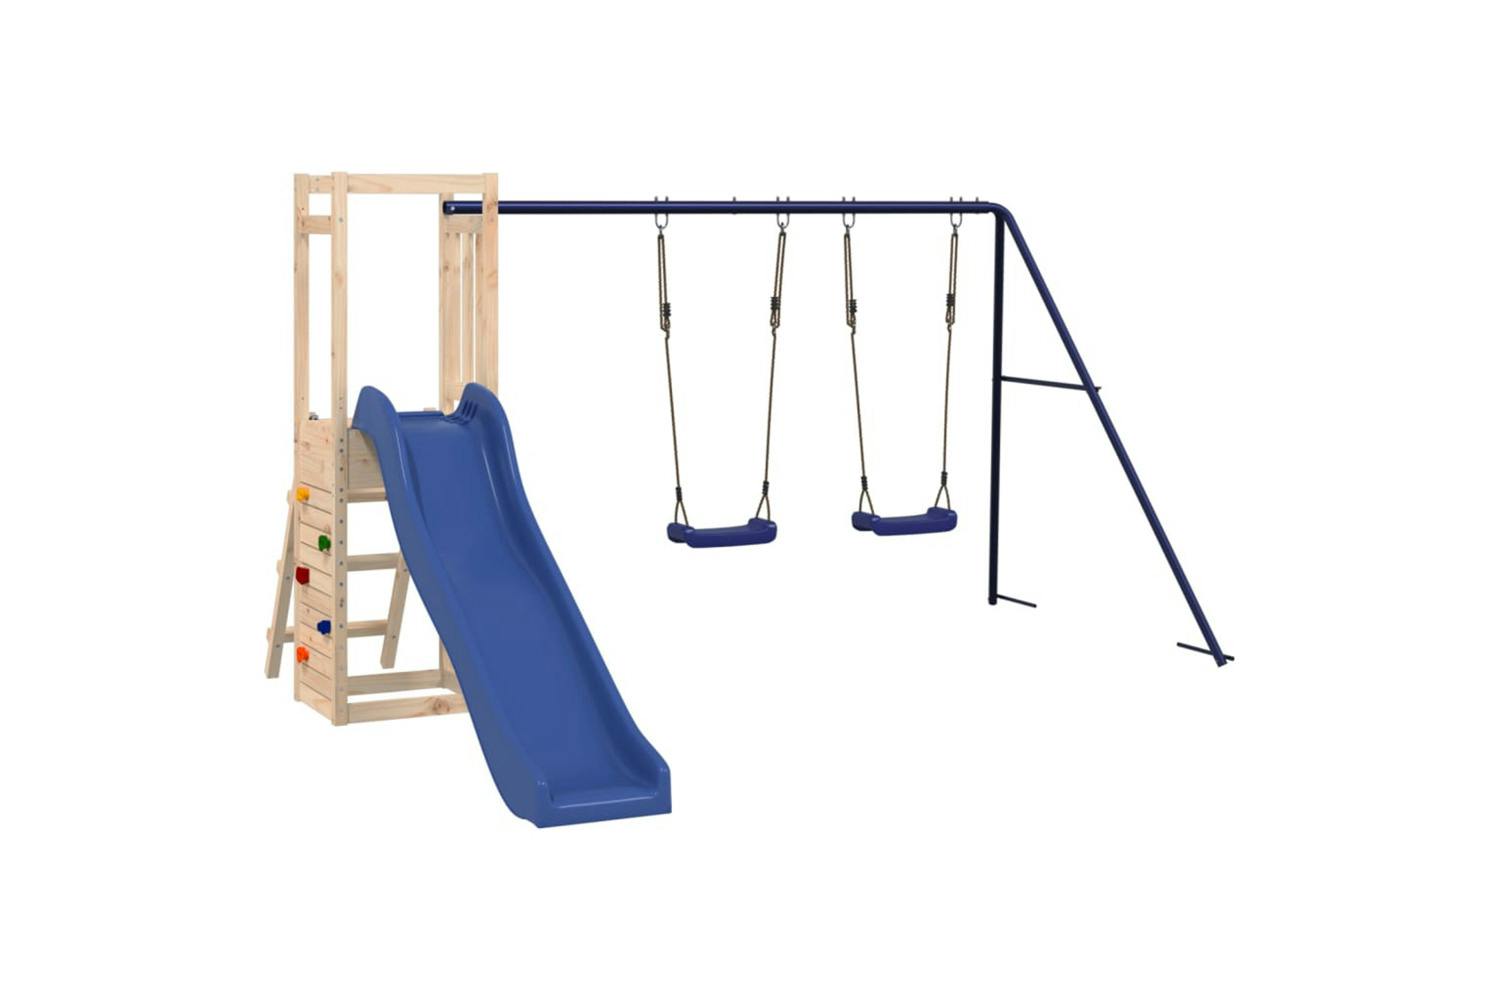 Vidaxl 3155927 Playhouse With Slide Swings Rockwall Solid Wood Pine